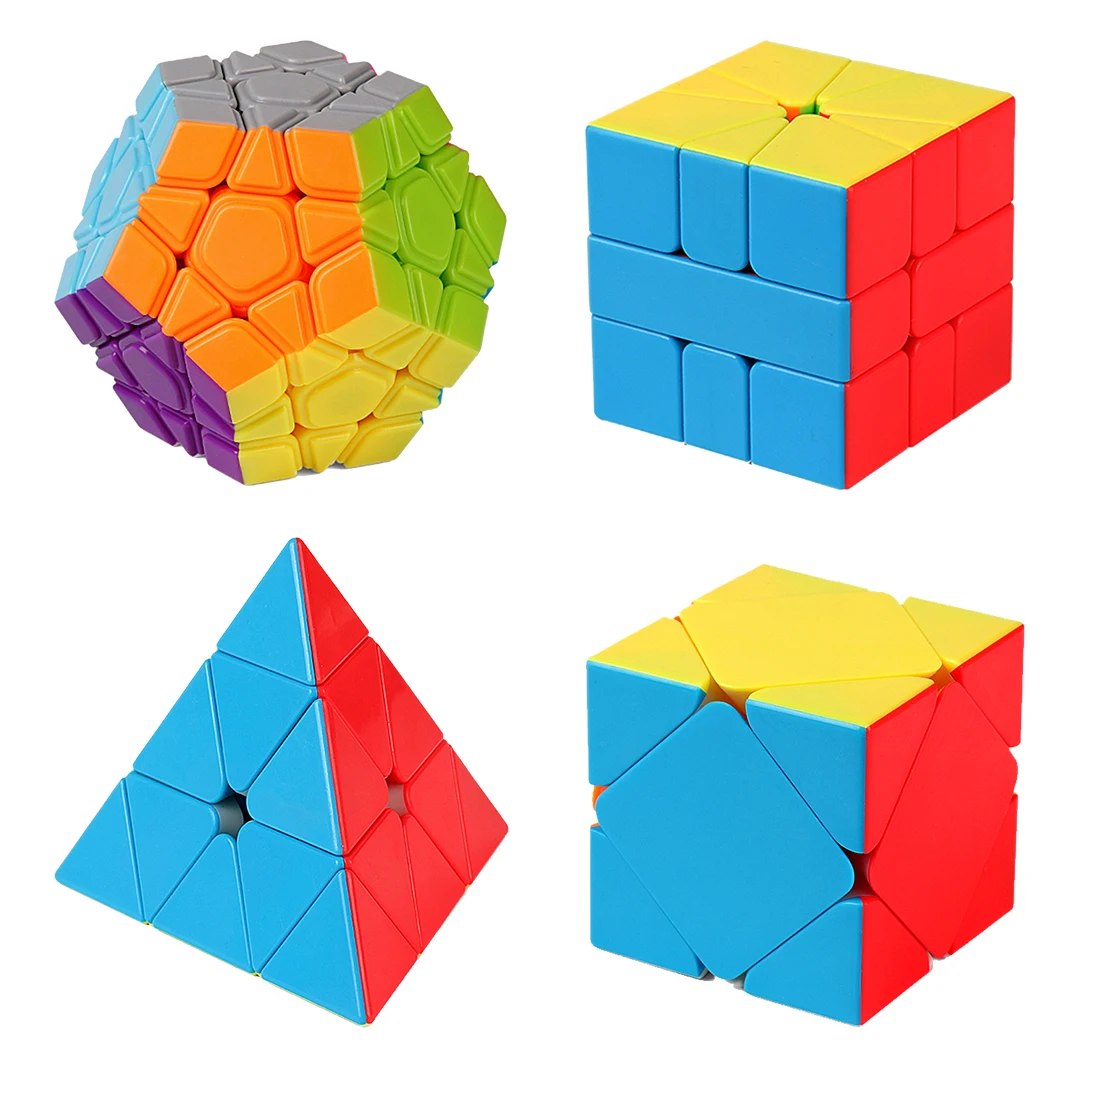 4 шт./компл. Cubing класс WCA официальный соревновательный куб подарочный набор волшебный куб пазл для Тренировки Мозга Игрушка красочный черный куб